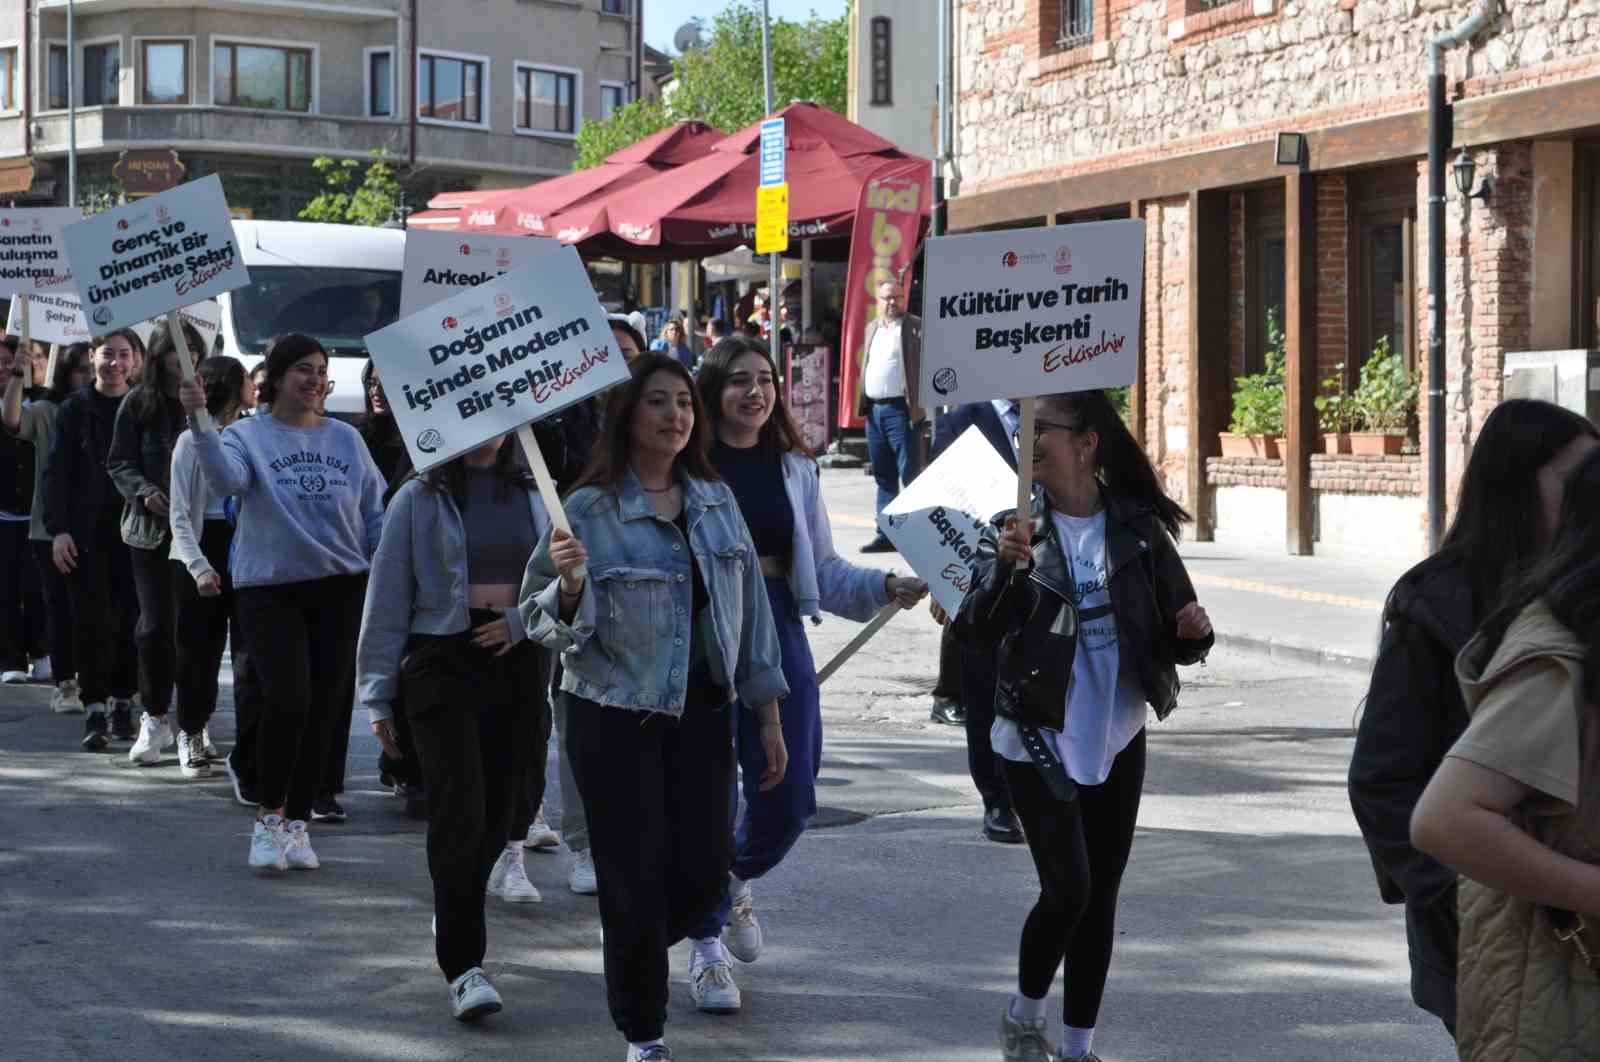 Turizm Haftası için liseli öğrencilerle yürüyüş düzenlendi